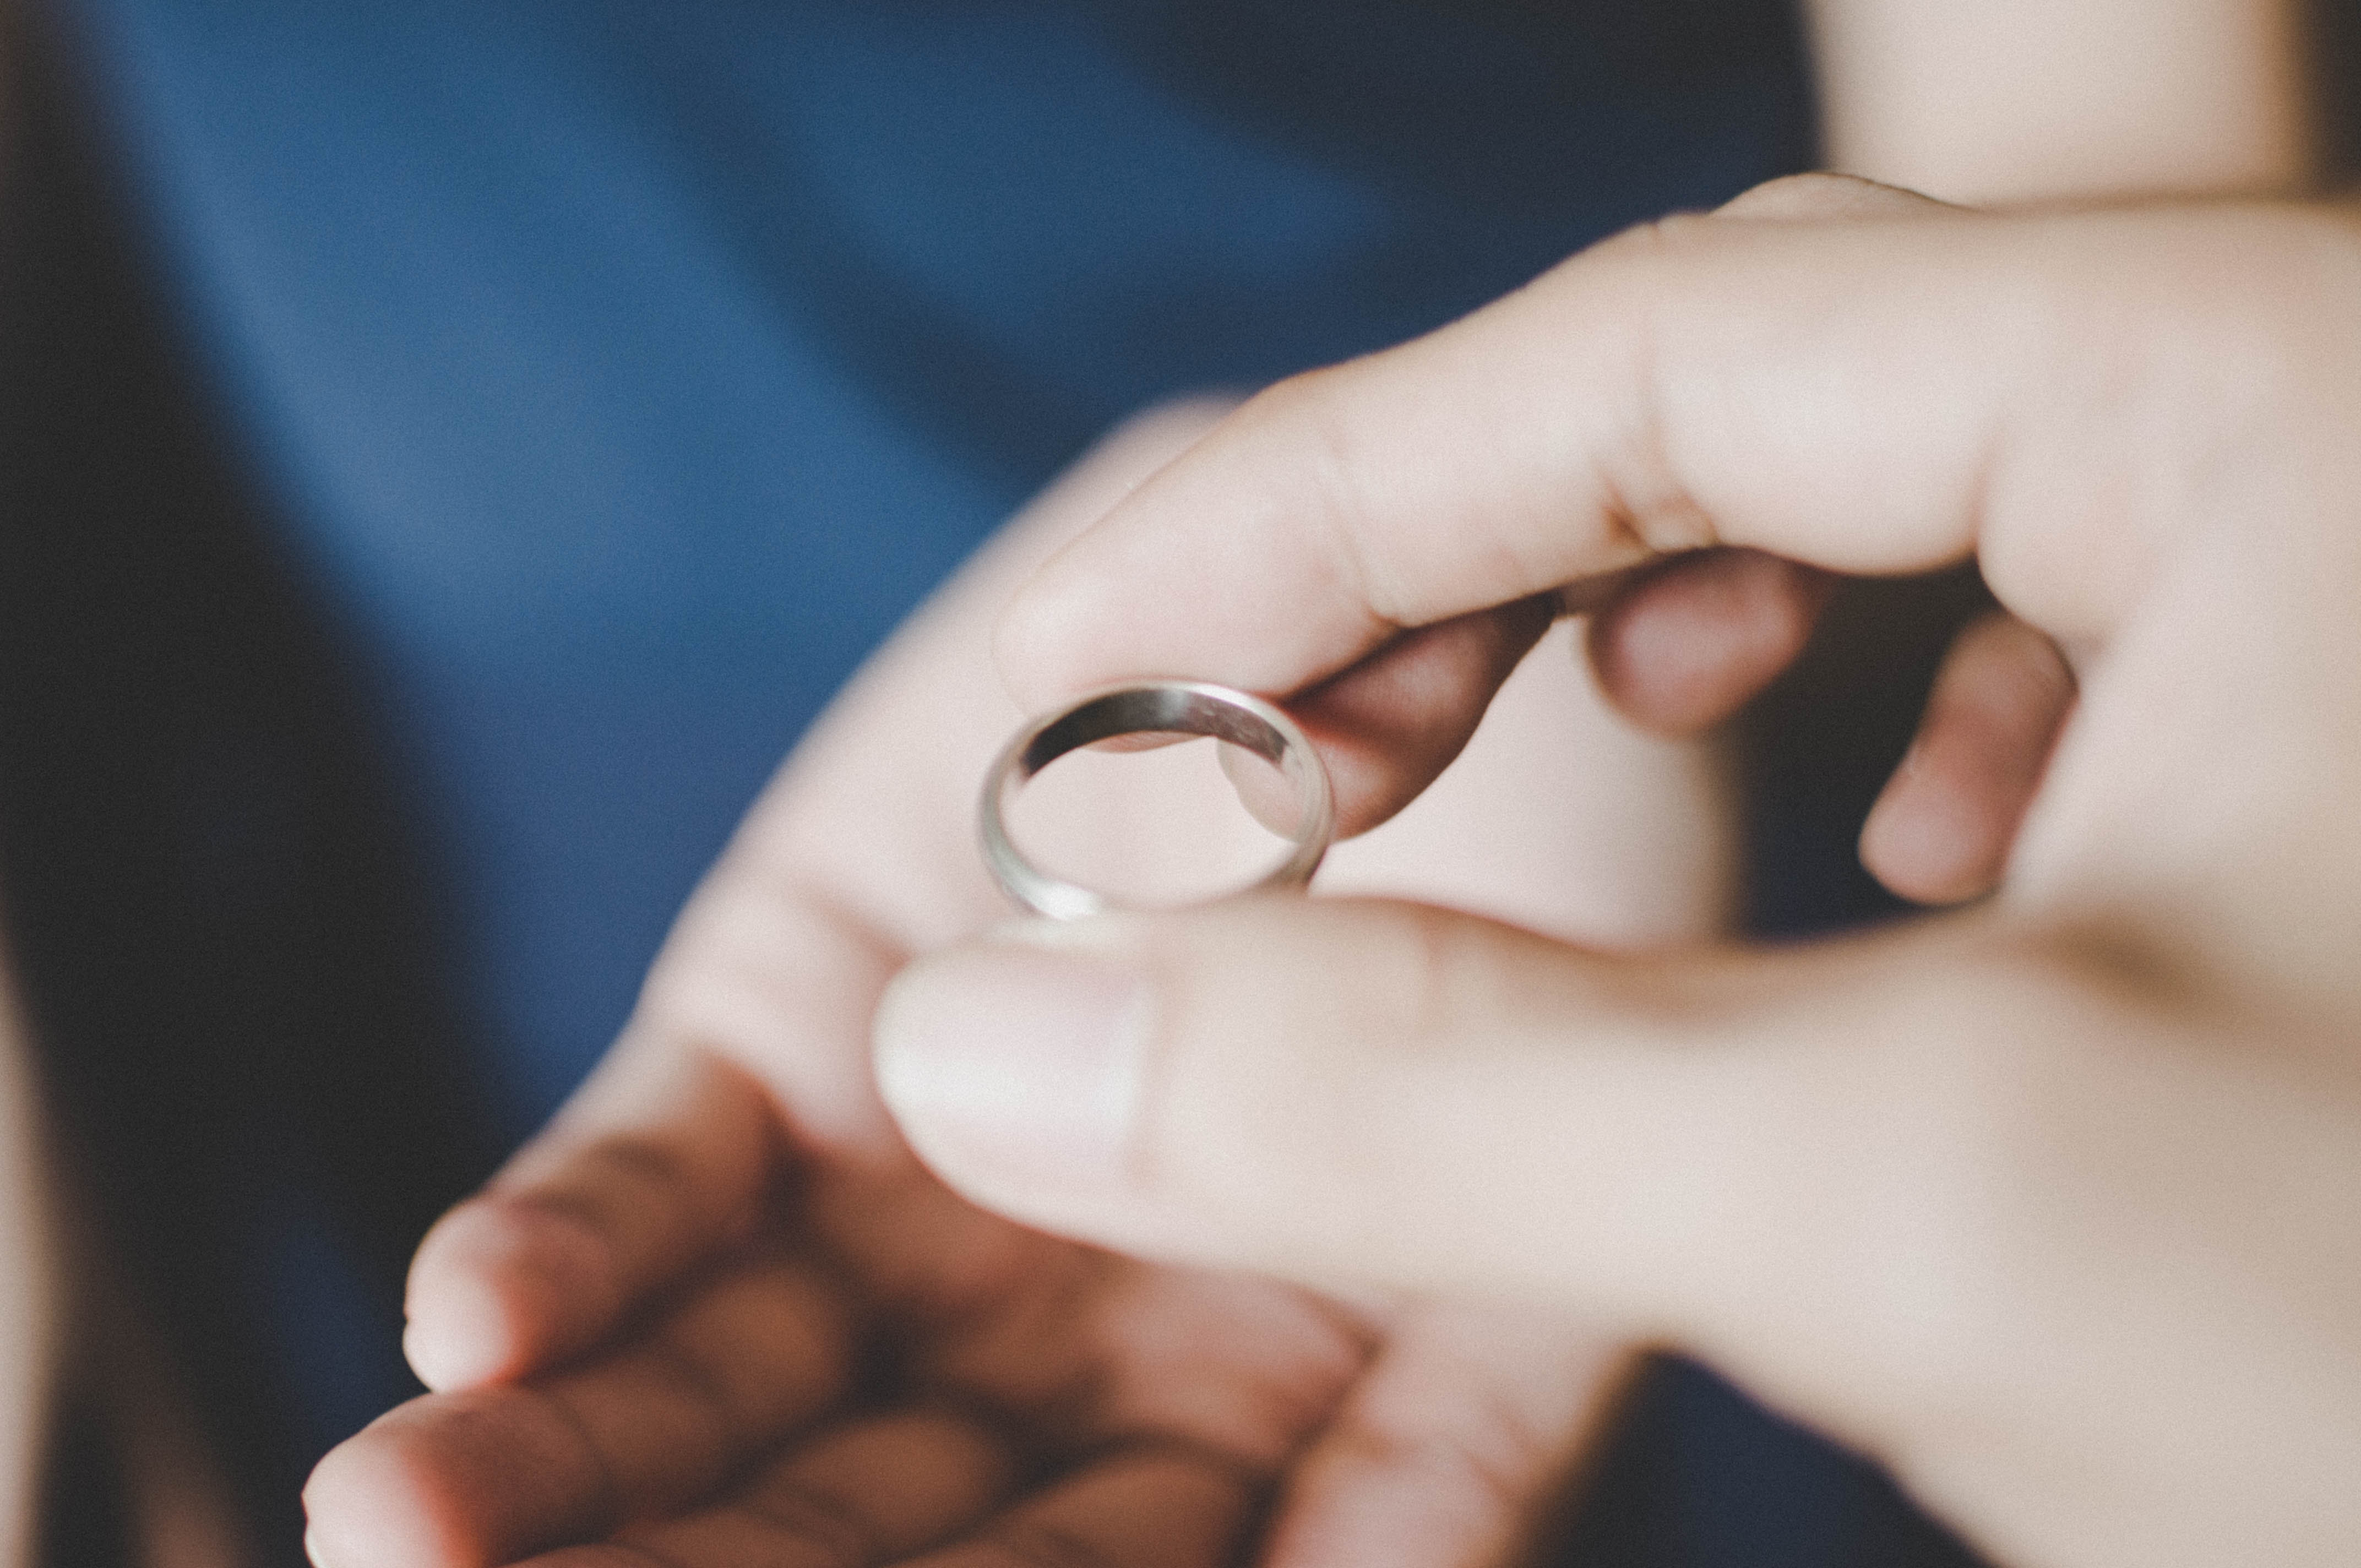 Eine Frau, die einen Ring zurückgibt | Quelle: Getty Images